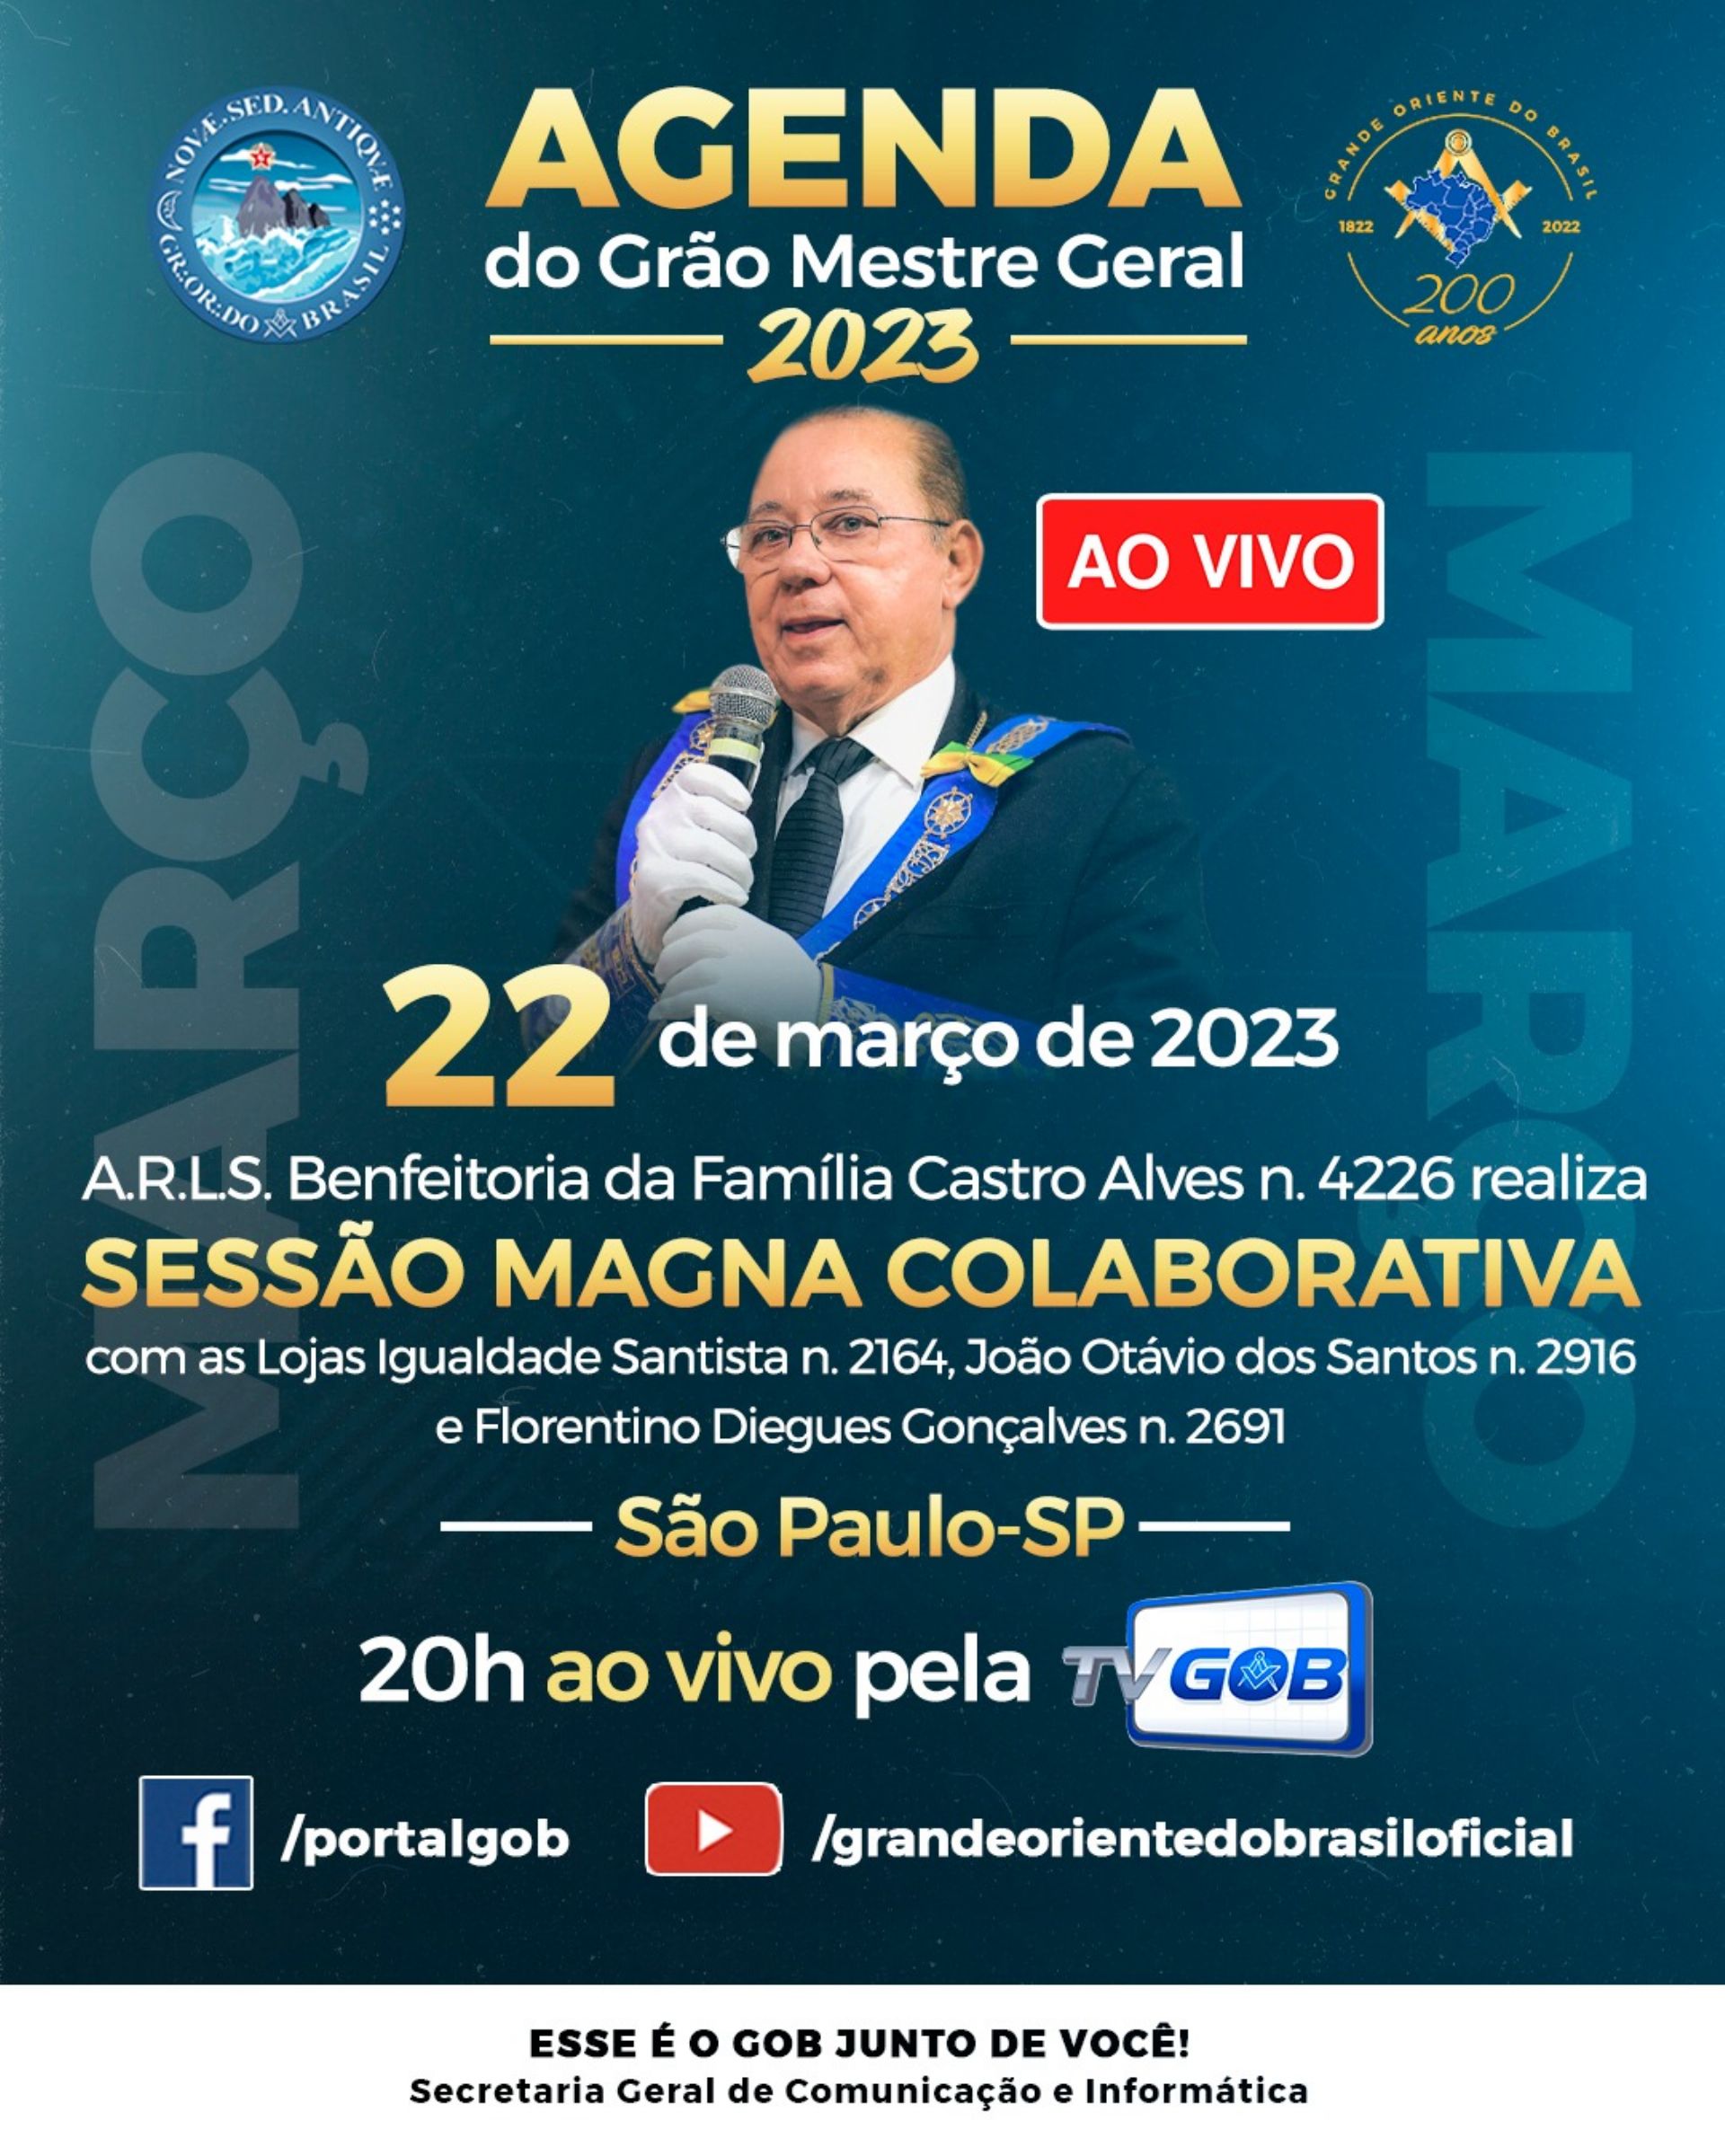 Sessão Magna Colaborativa com a presença do GMG Soberano Irmão Múcio Bonifácio Guimarães